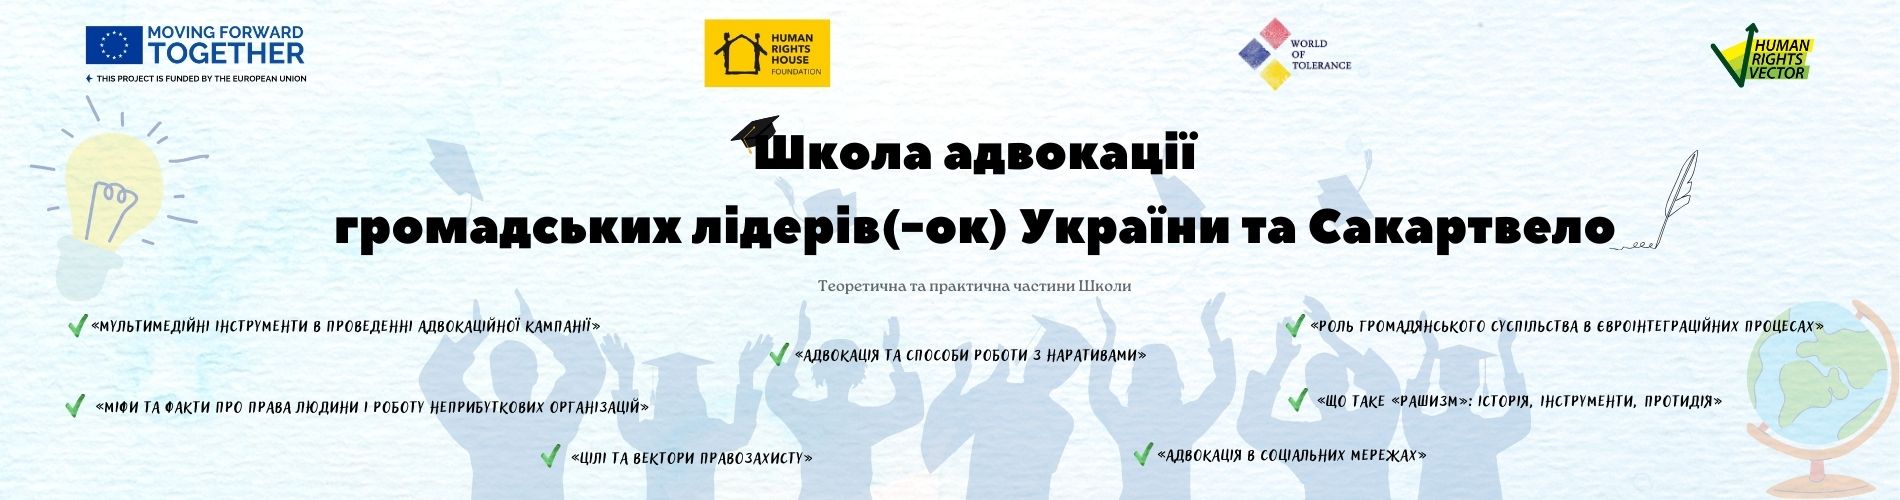 Школа адвокації для громадських лідерів в Україні та Сакартвело